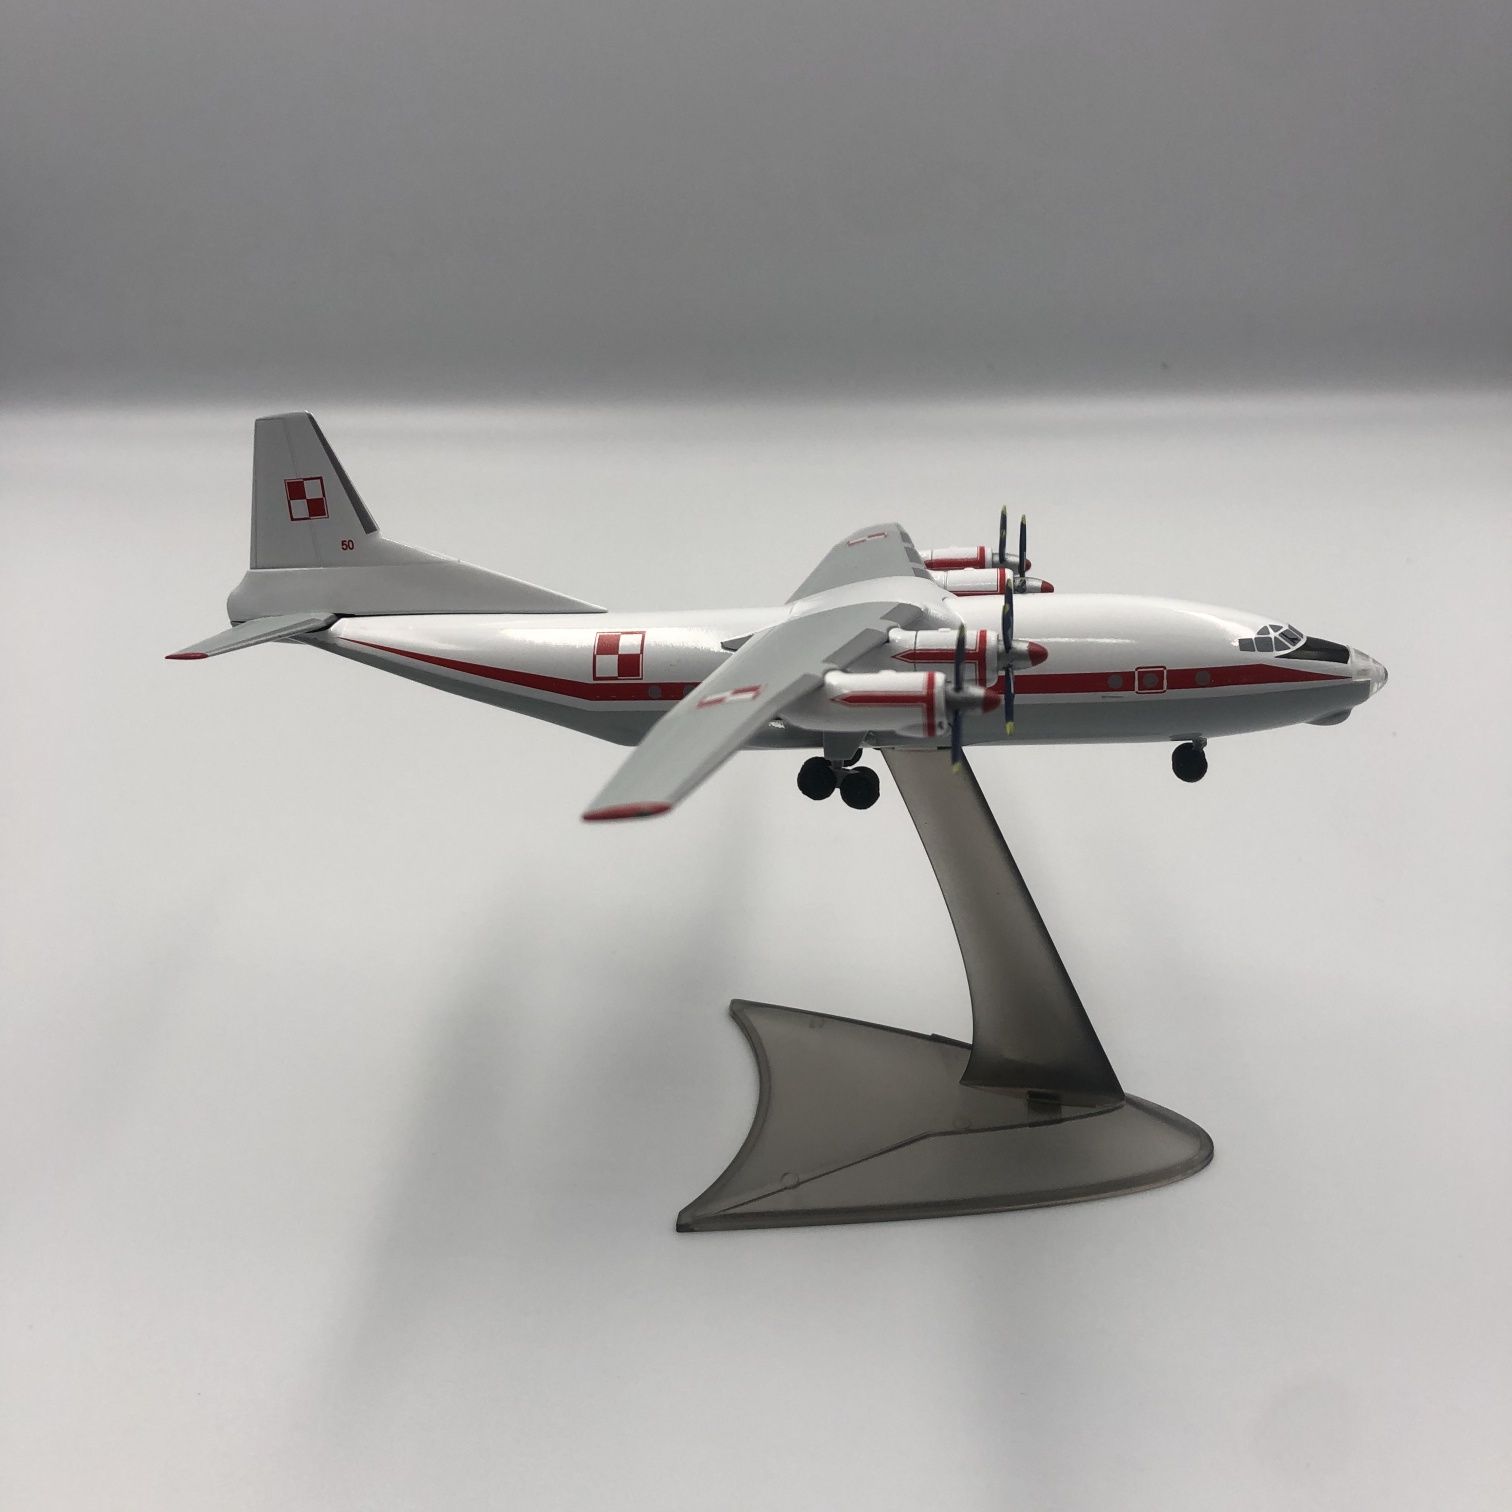 Коллекционная модель самолета Ан-12 масштаб 1:200 (19 см) Херпа